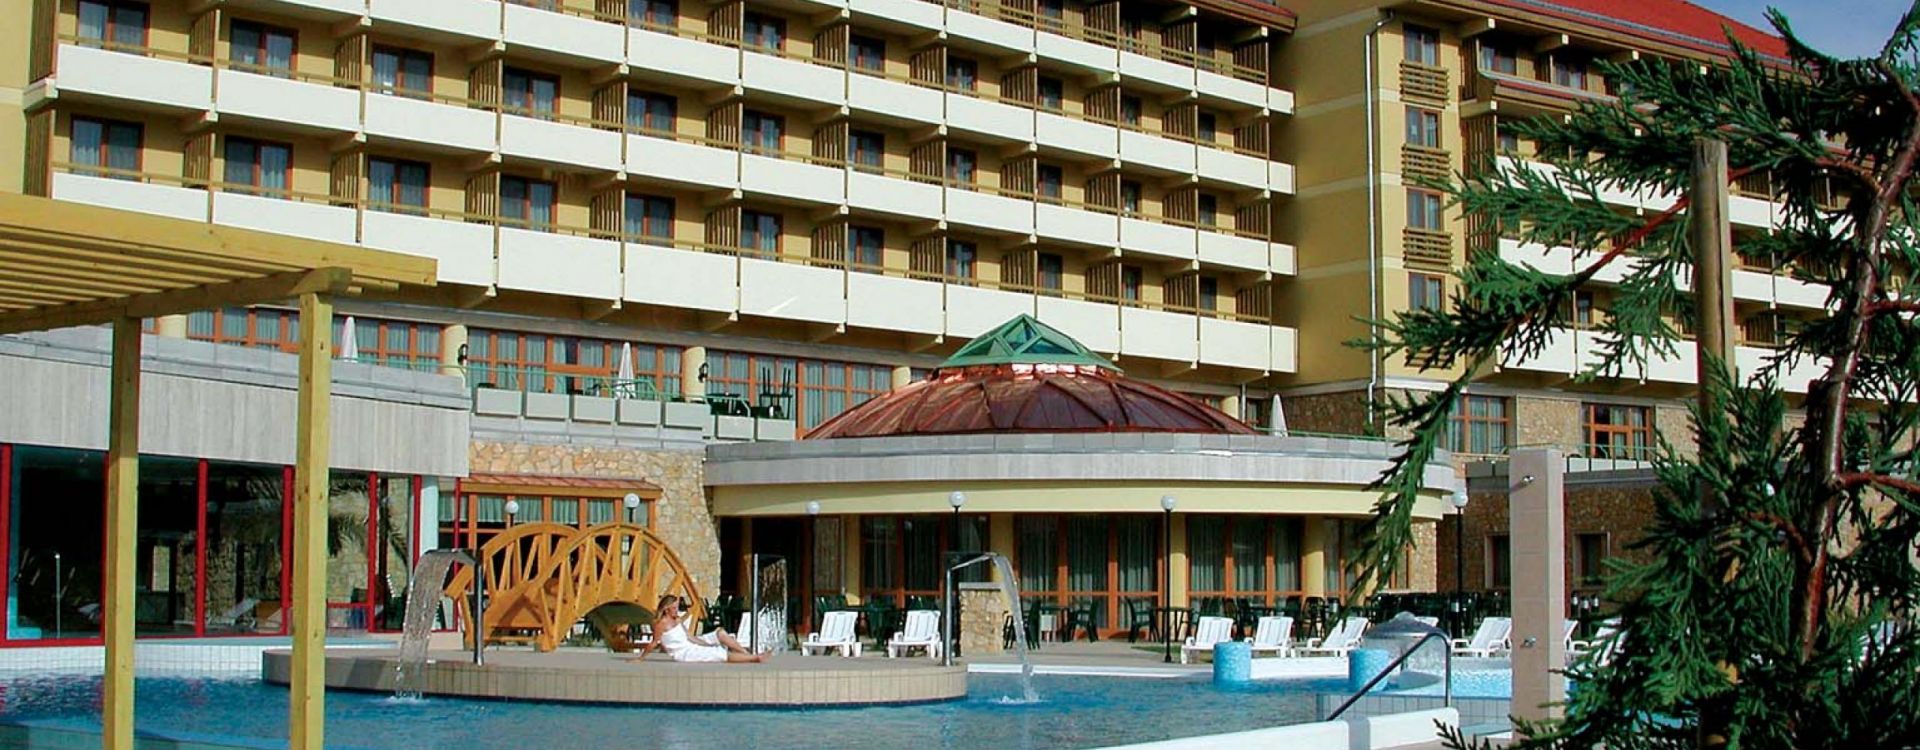 Lázeňský hotel Pelion  - Týdenní pobyt v Pelionu